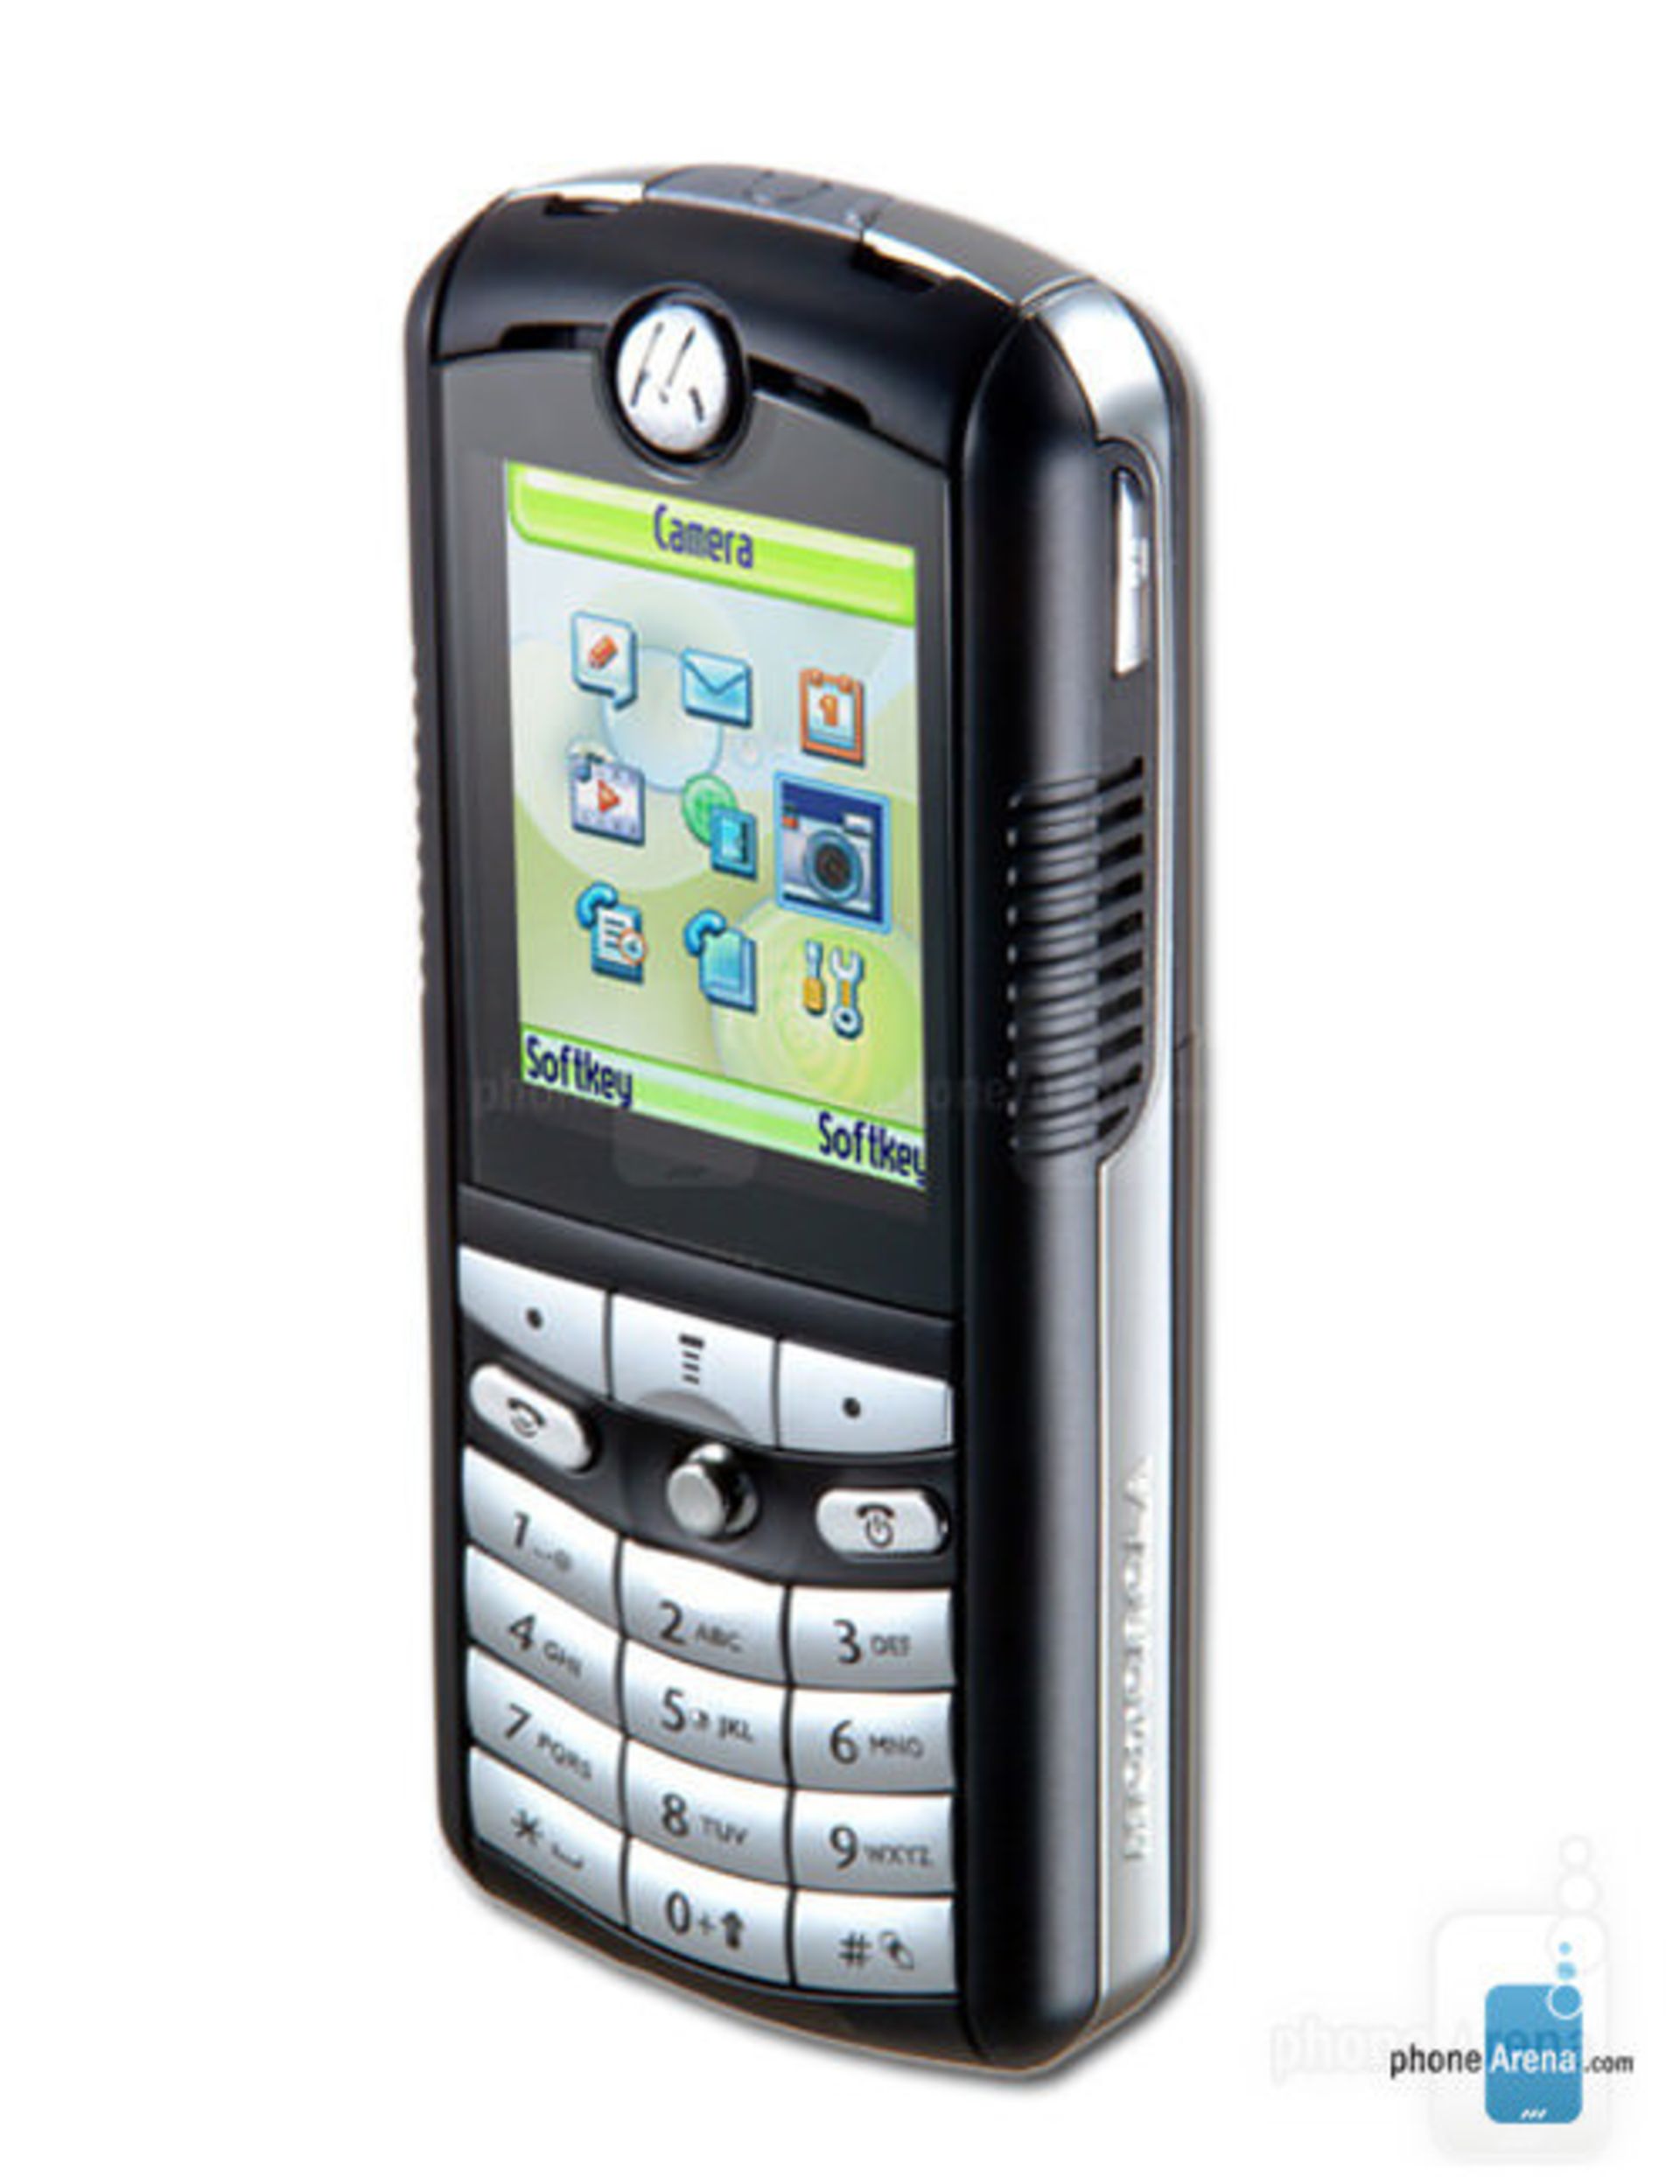 The Motorola 398